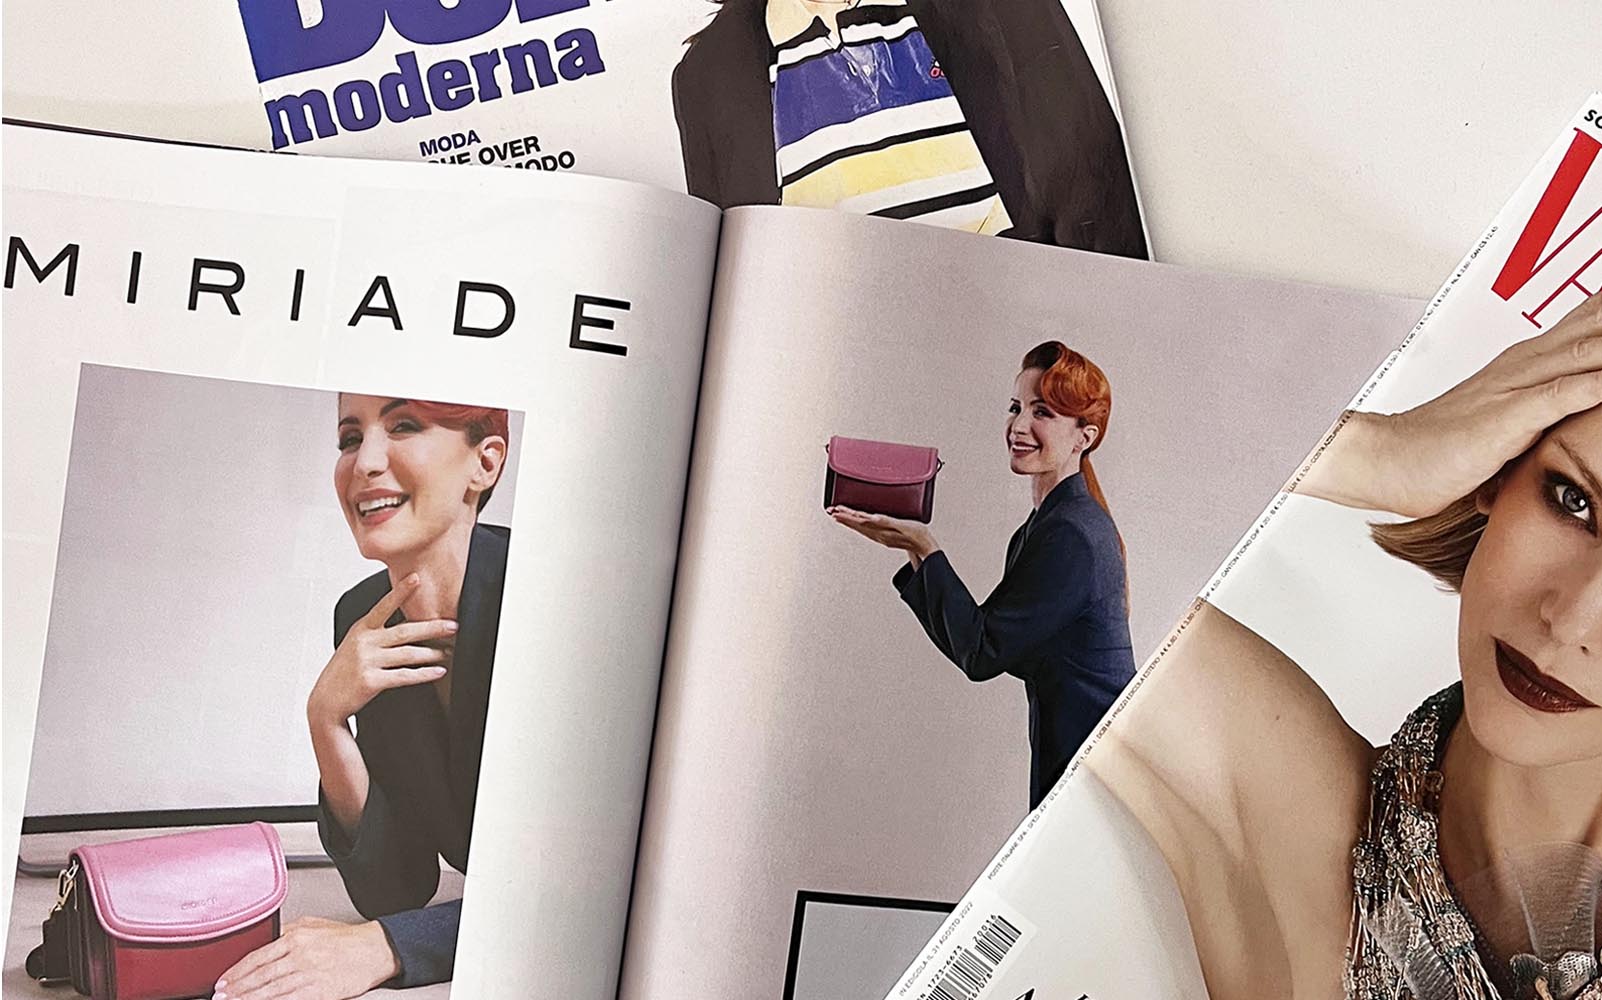 Campagna Miriade con Andrea Delogu sulle principali riviste di moda.